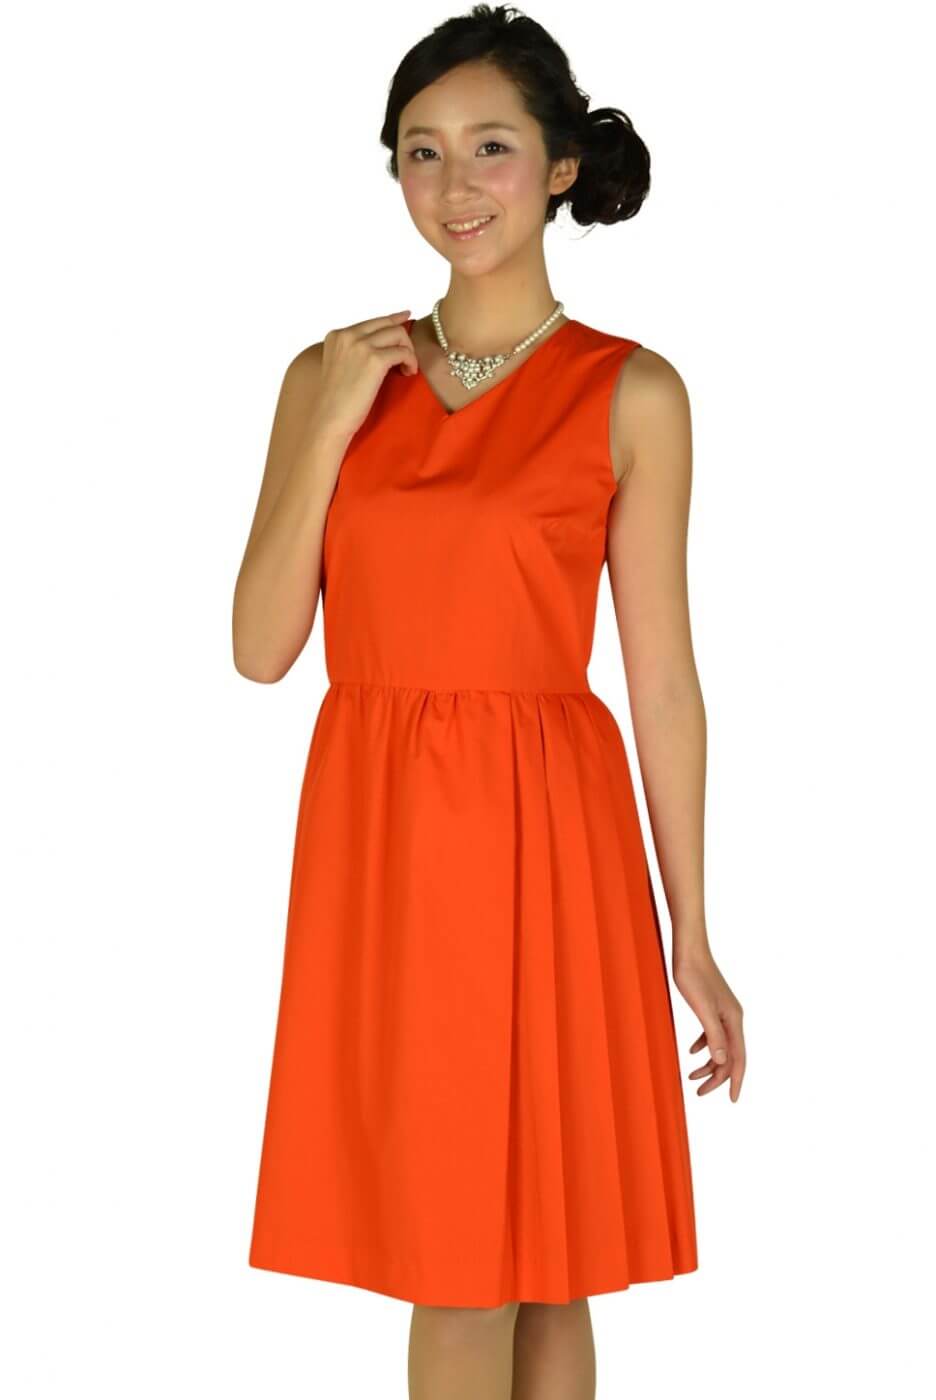 デミルクス ビームス(Demi-Luxe BEAMS)Vネックブライトオレンジドレス